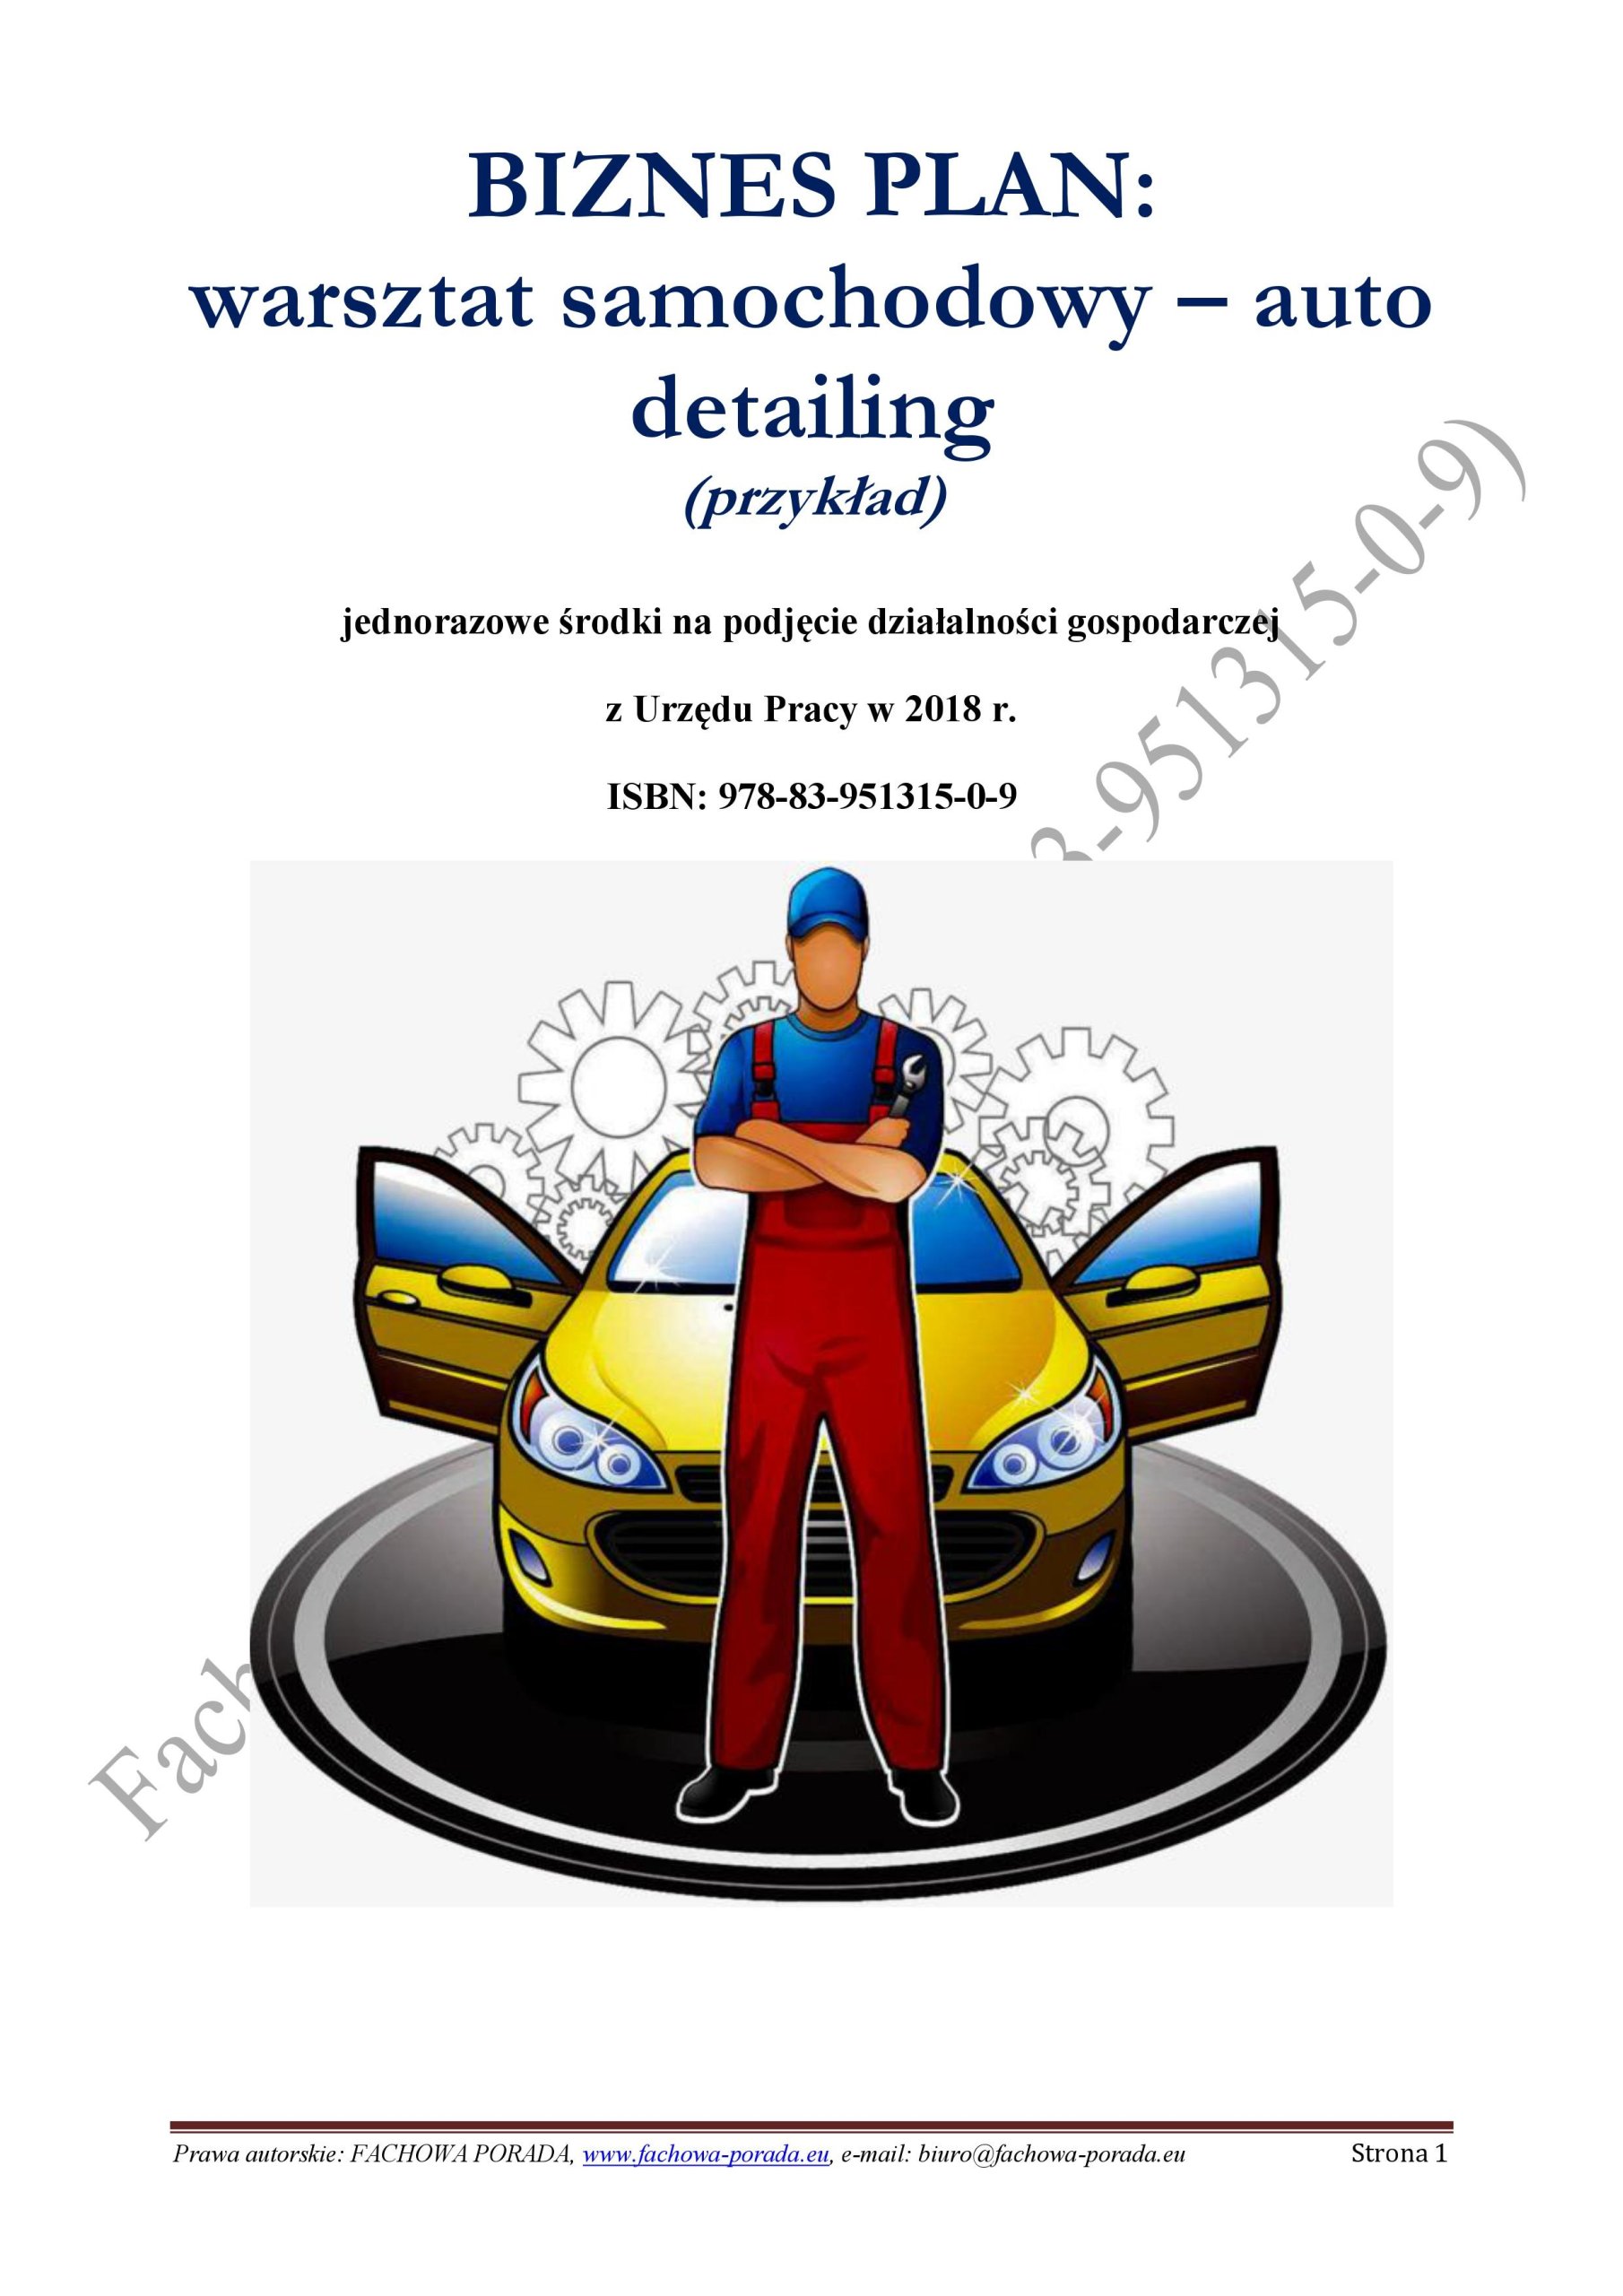 Biznesplan Warsztat Samochodowy - Auto Detailing - 39,90 Zł - Allegro.pl - Raty 0%, Darmowa Dostawa Ze Smart! - Serock - Id Oferty: 7375303299